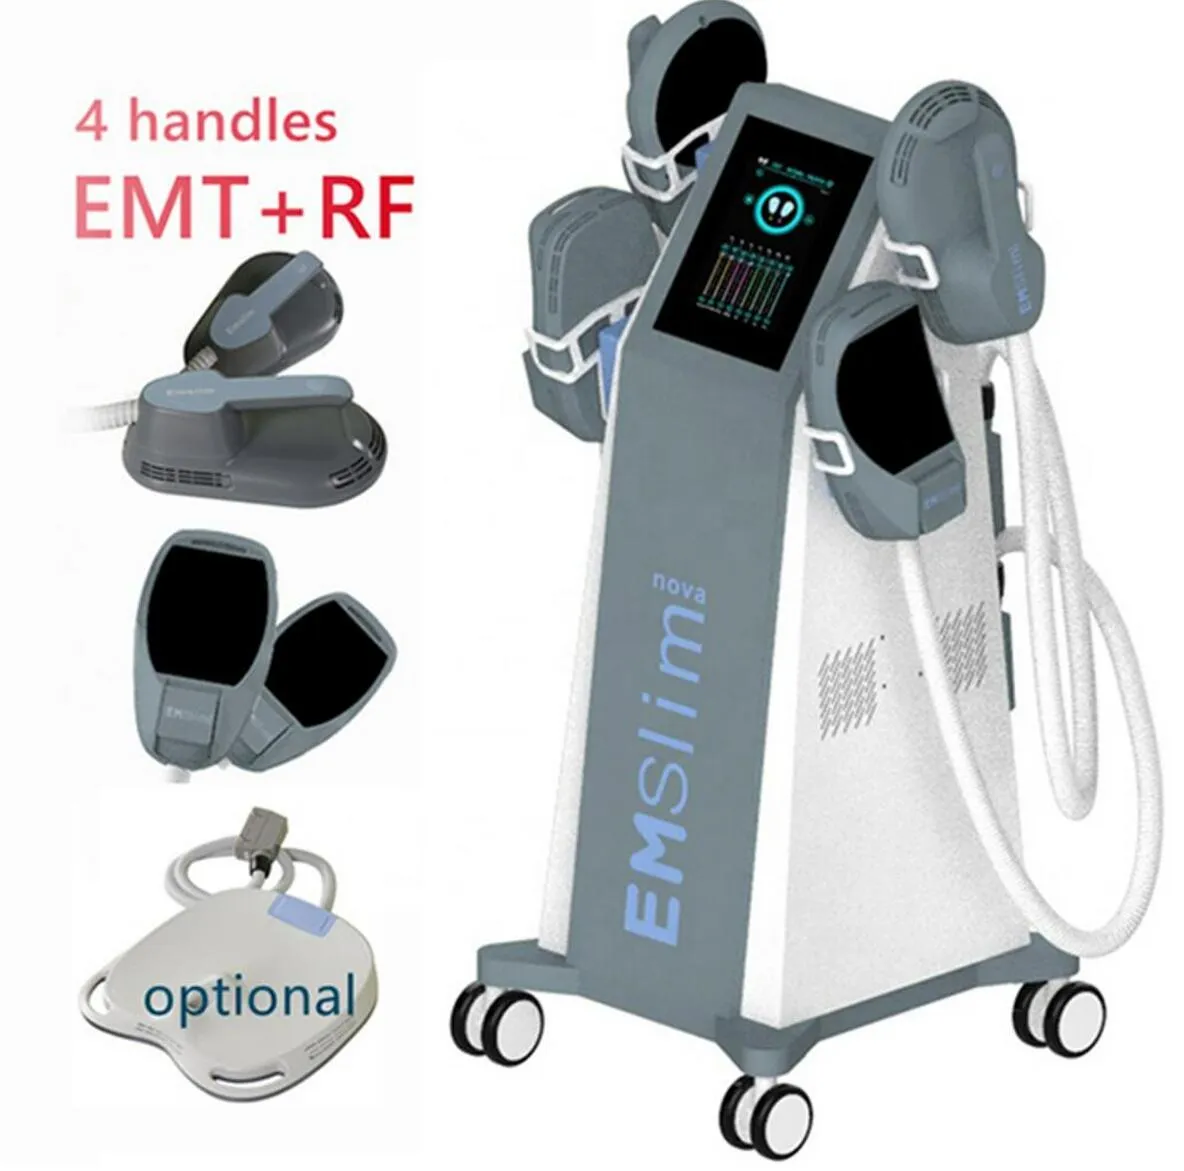 Hochwertiges EMslim RF HI-EMT-Schlankheitsgerät, das elektromagnetische EMS-Muskelstimulation zur Fettverbrennung und Cellulite-Entfernung mit HF- und Kissenausrüstung formt